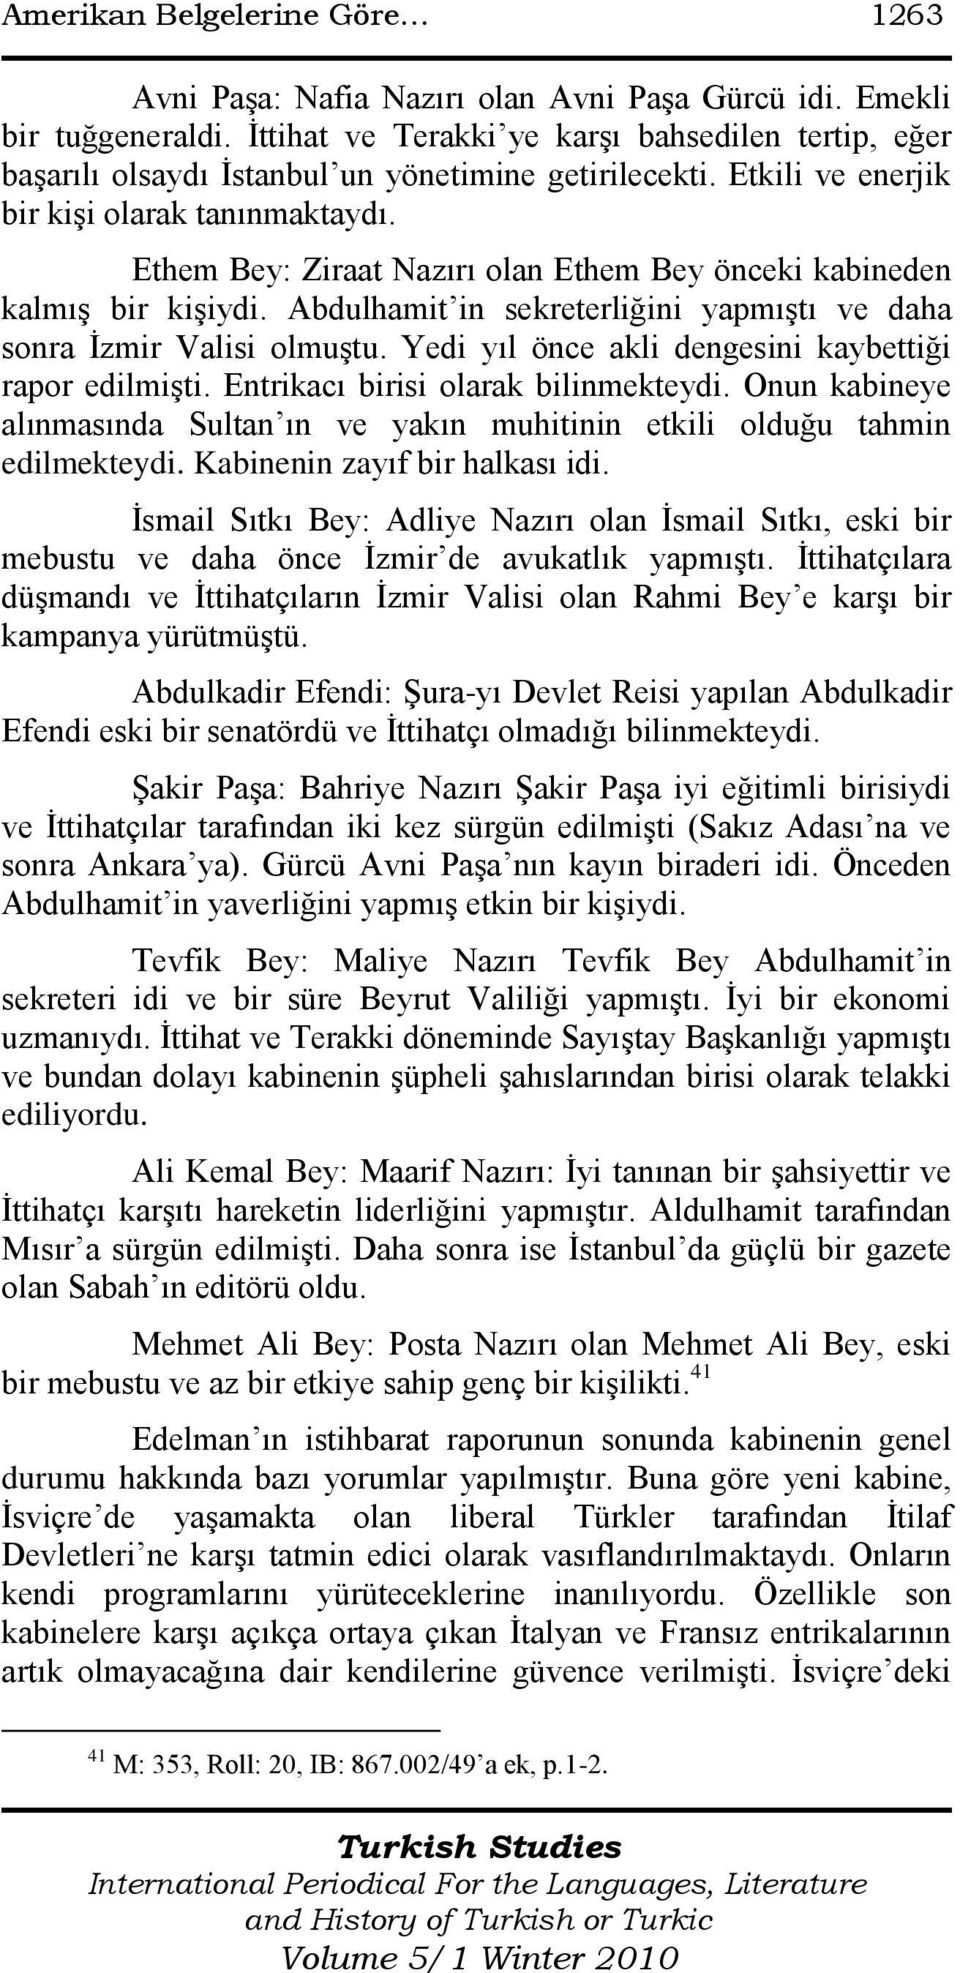 Ethem Bey: Ziraat Nazırı olan Ethem Bey önceki kabineden kalmış bir kişiydi. Abdulhamit in sekreterliğini yapmıştı ve daha sonra İzmir Valisi olmuştu.